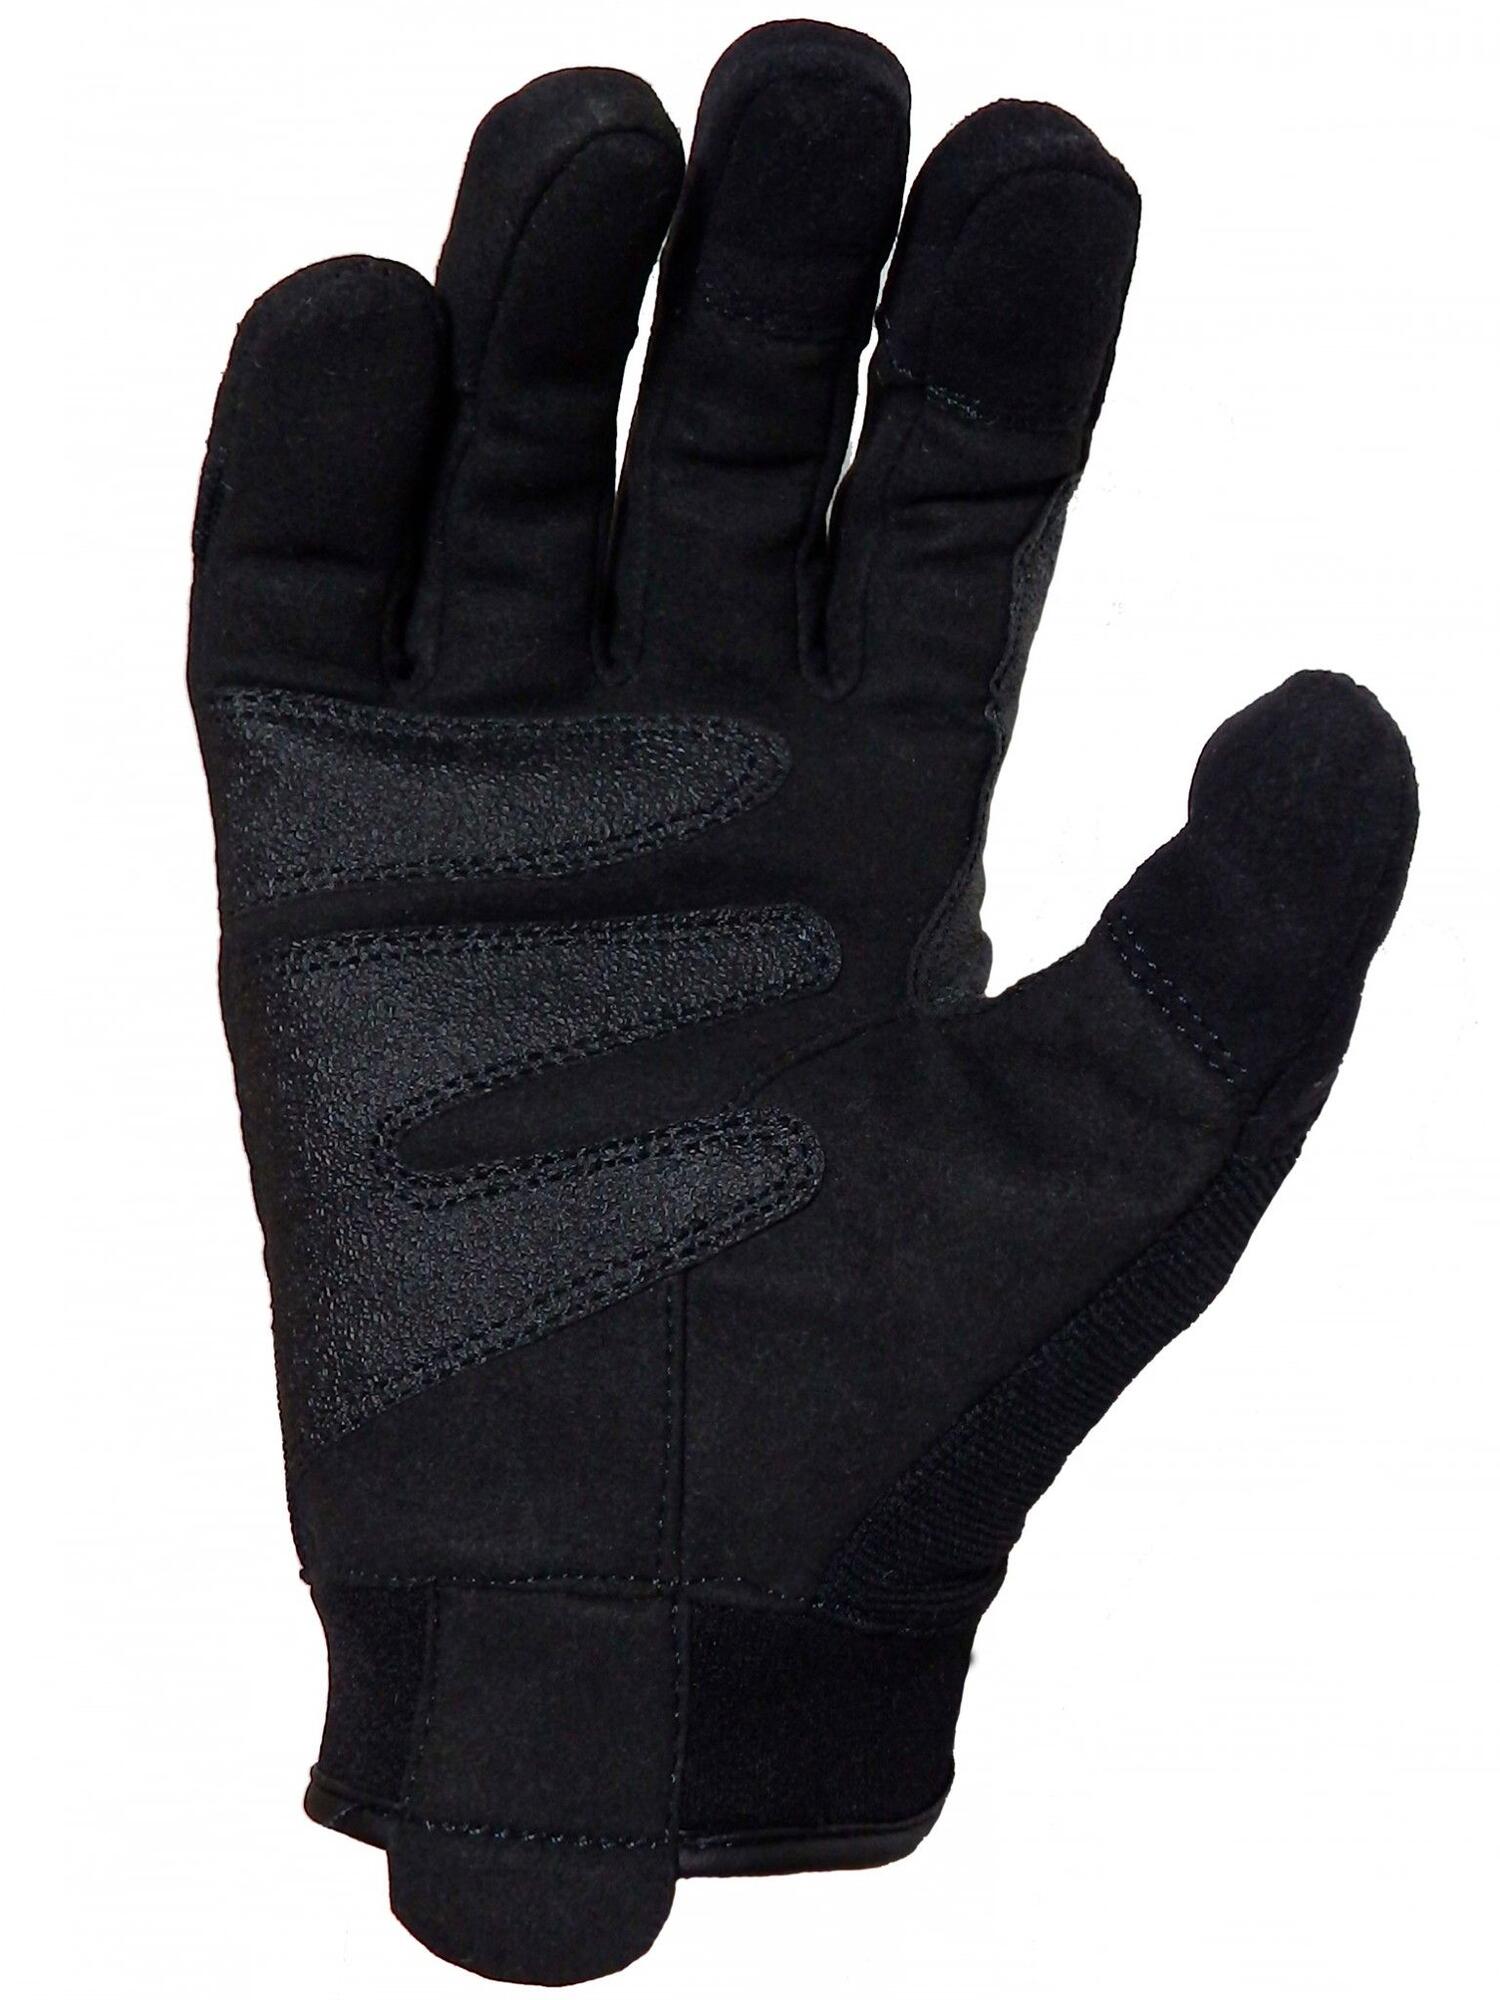 Buy PGD200 PRO handsker med Touch funktion - Offer: 589,00,-